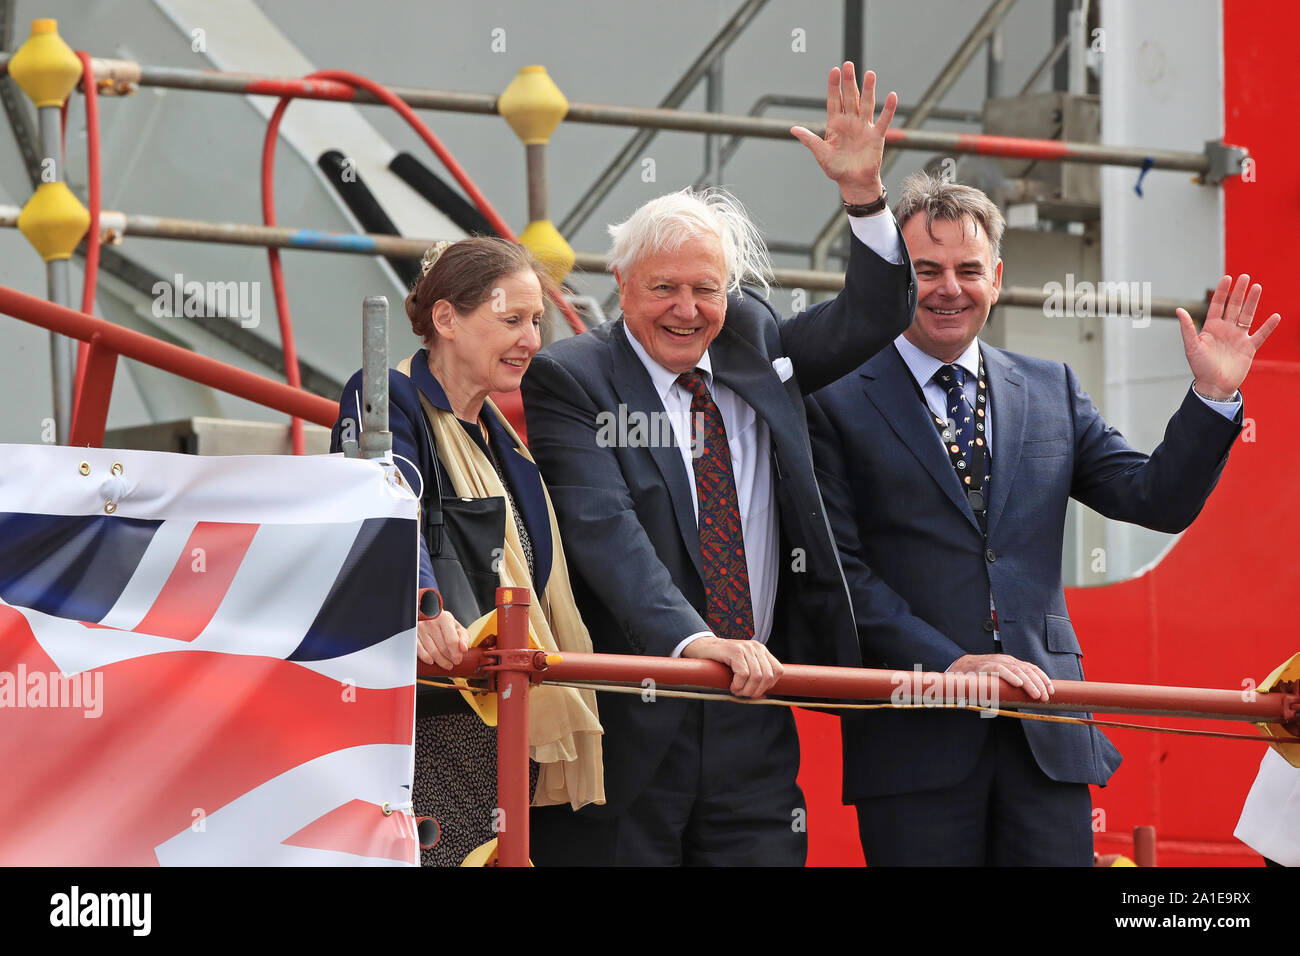 Sir David Attenborough während der taufzeremonie der Polarforschung Schiff, das einer öffentlichen Abstimmung Boaty McBoatface, auf der Werft Cammell Laird in Birkenhead, Merseyside zu nennen. Stockfoto